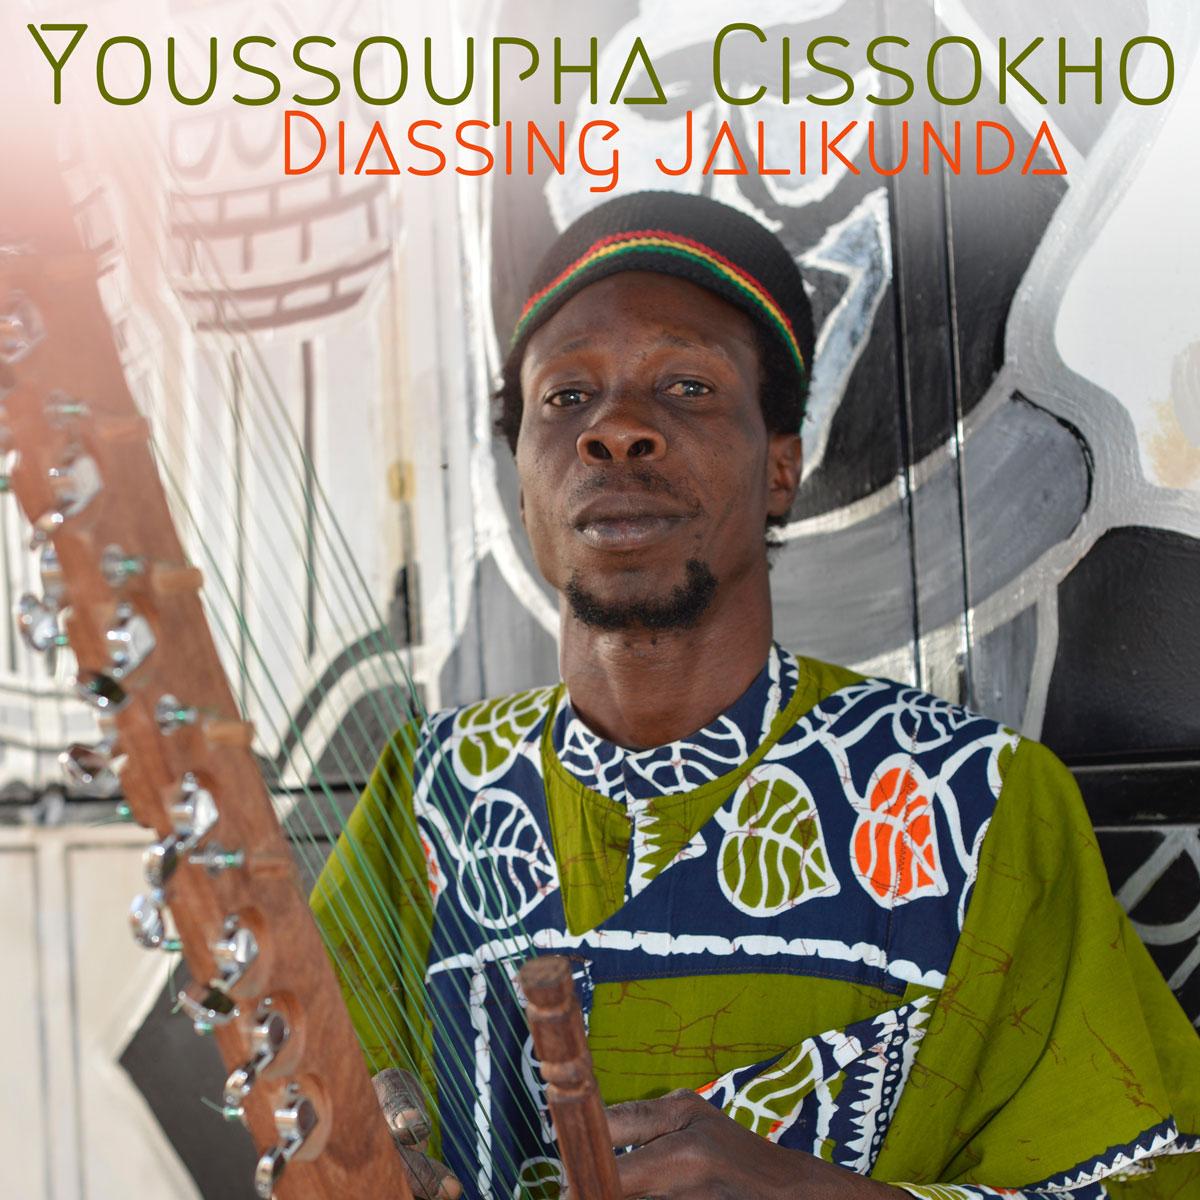 Album cover for Youssoupha Cissokho’s “Diassing Jalikunda."